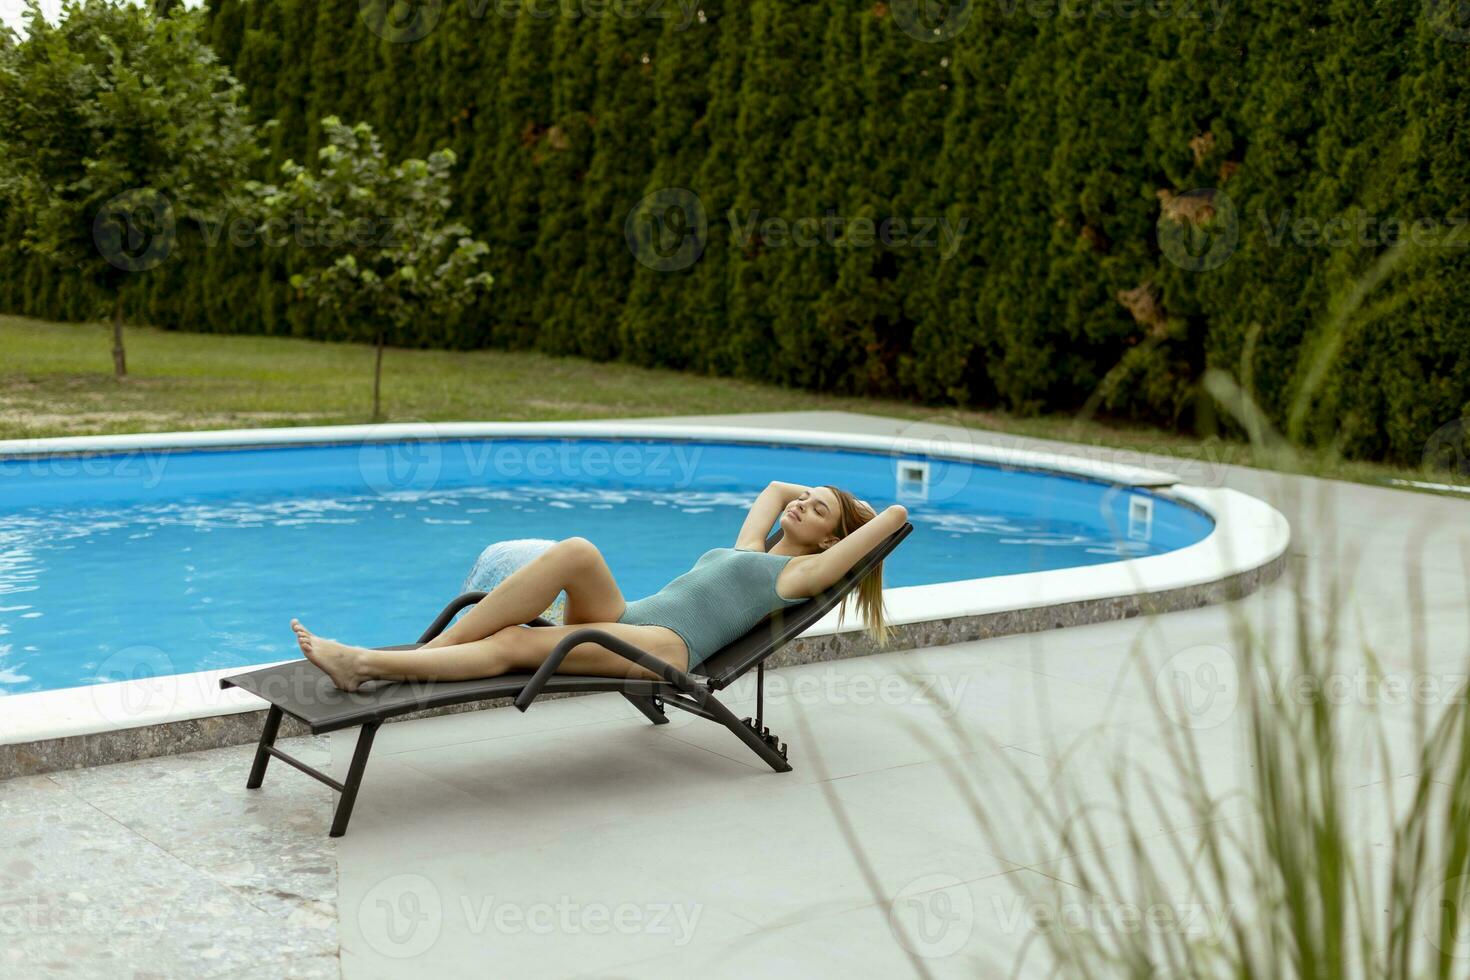 jovem deitada em um deck char à beira da piscina no quintal da casa foto